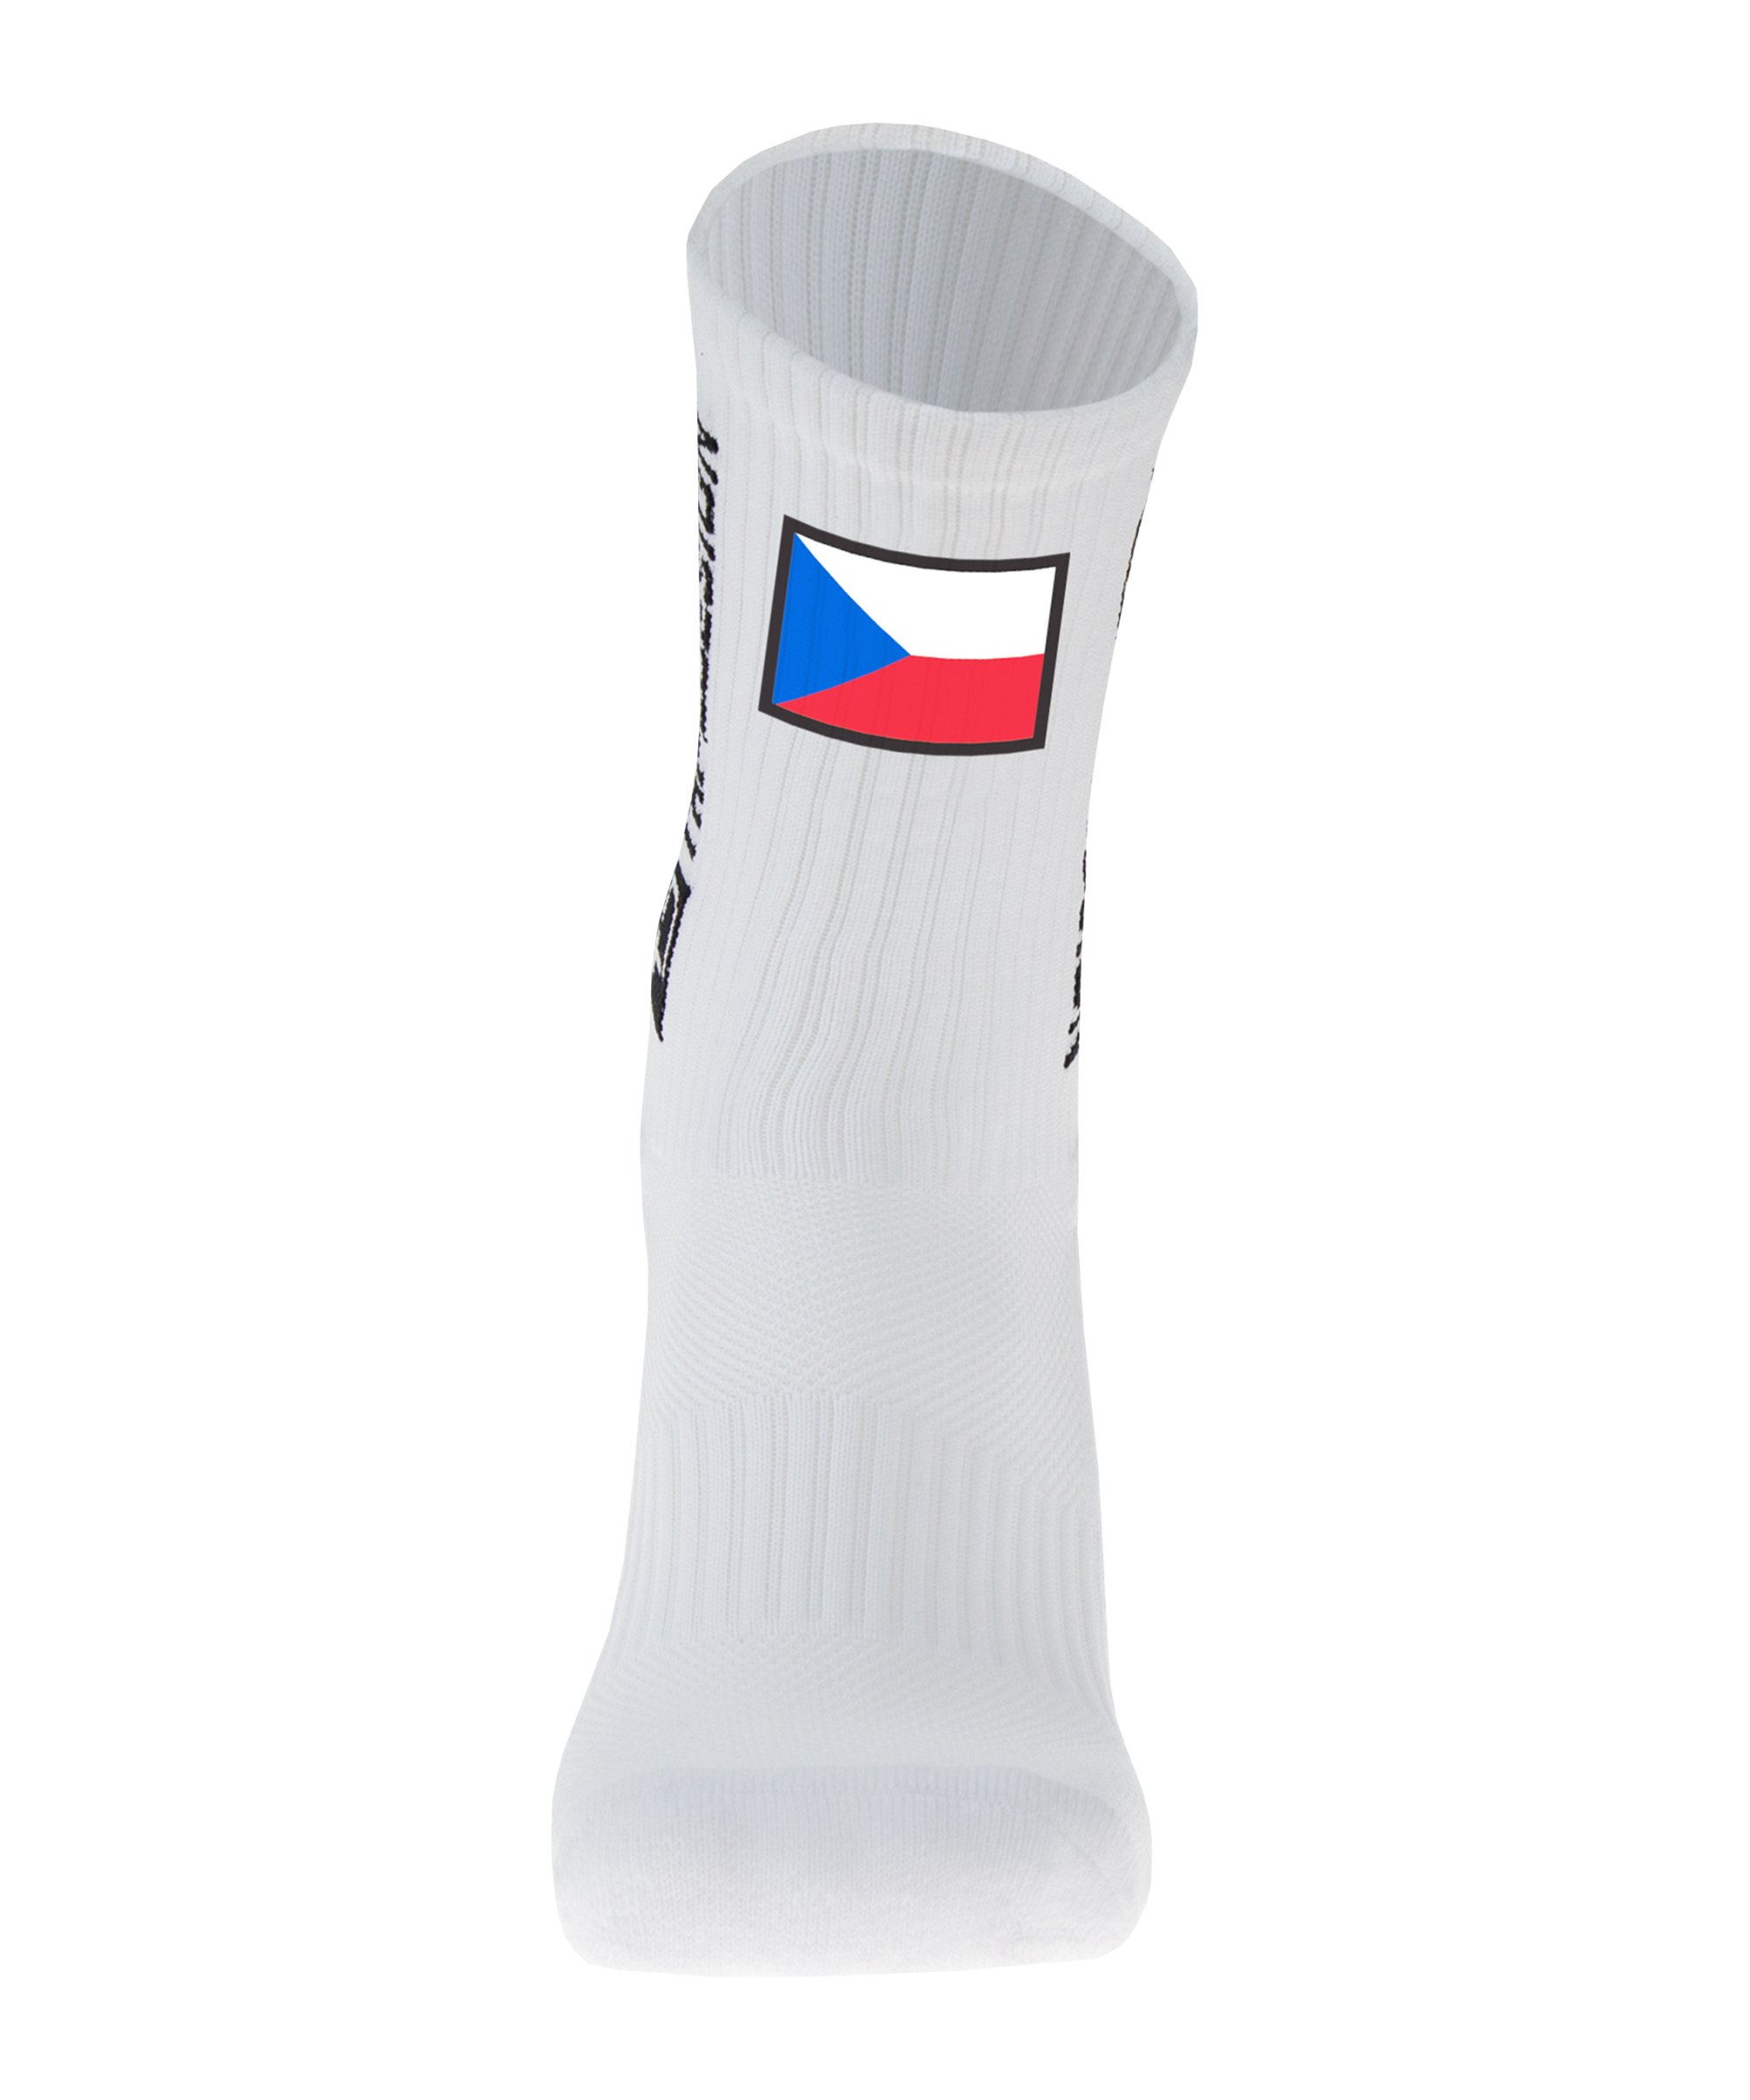 Tapedesign Gripsocks Tschechien Socken Weiss - weiss